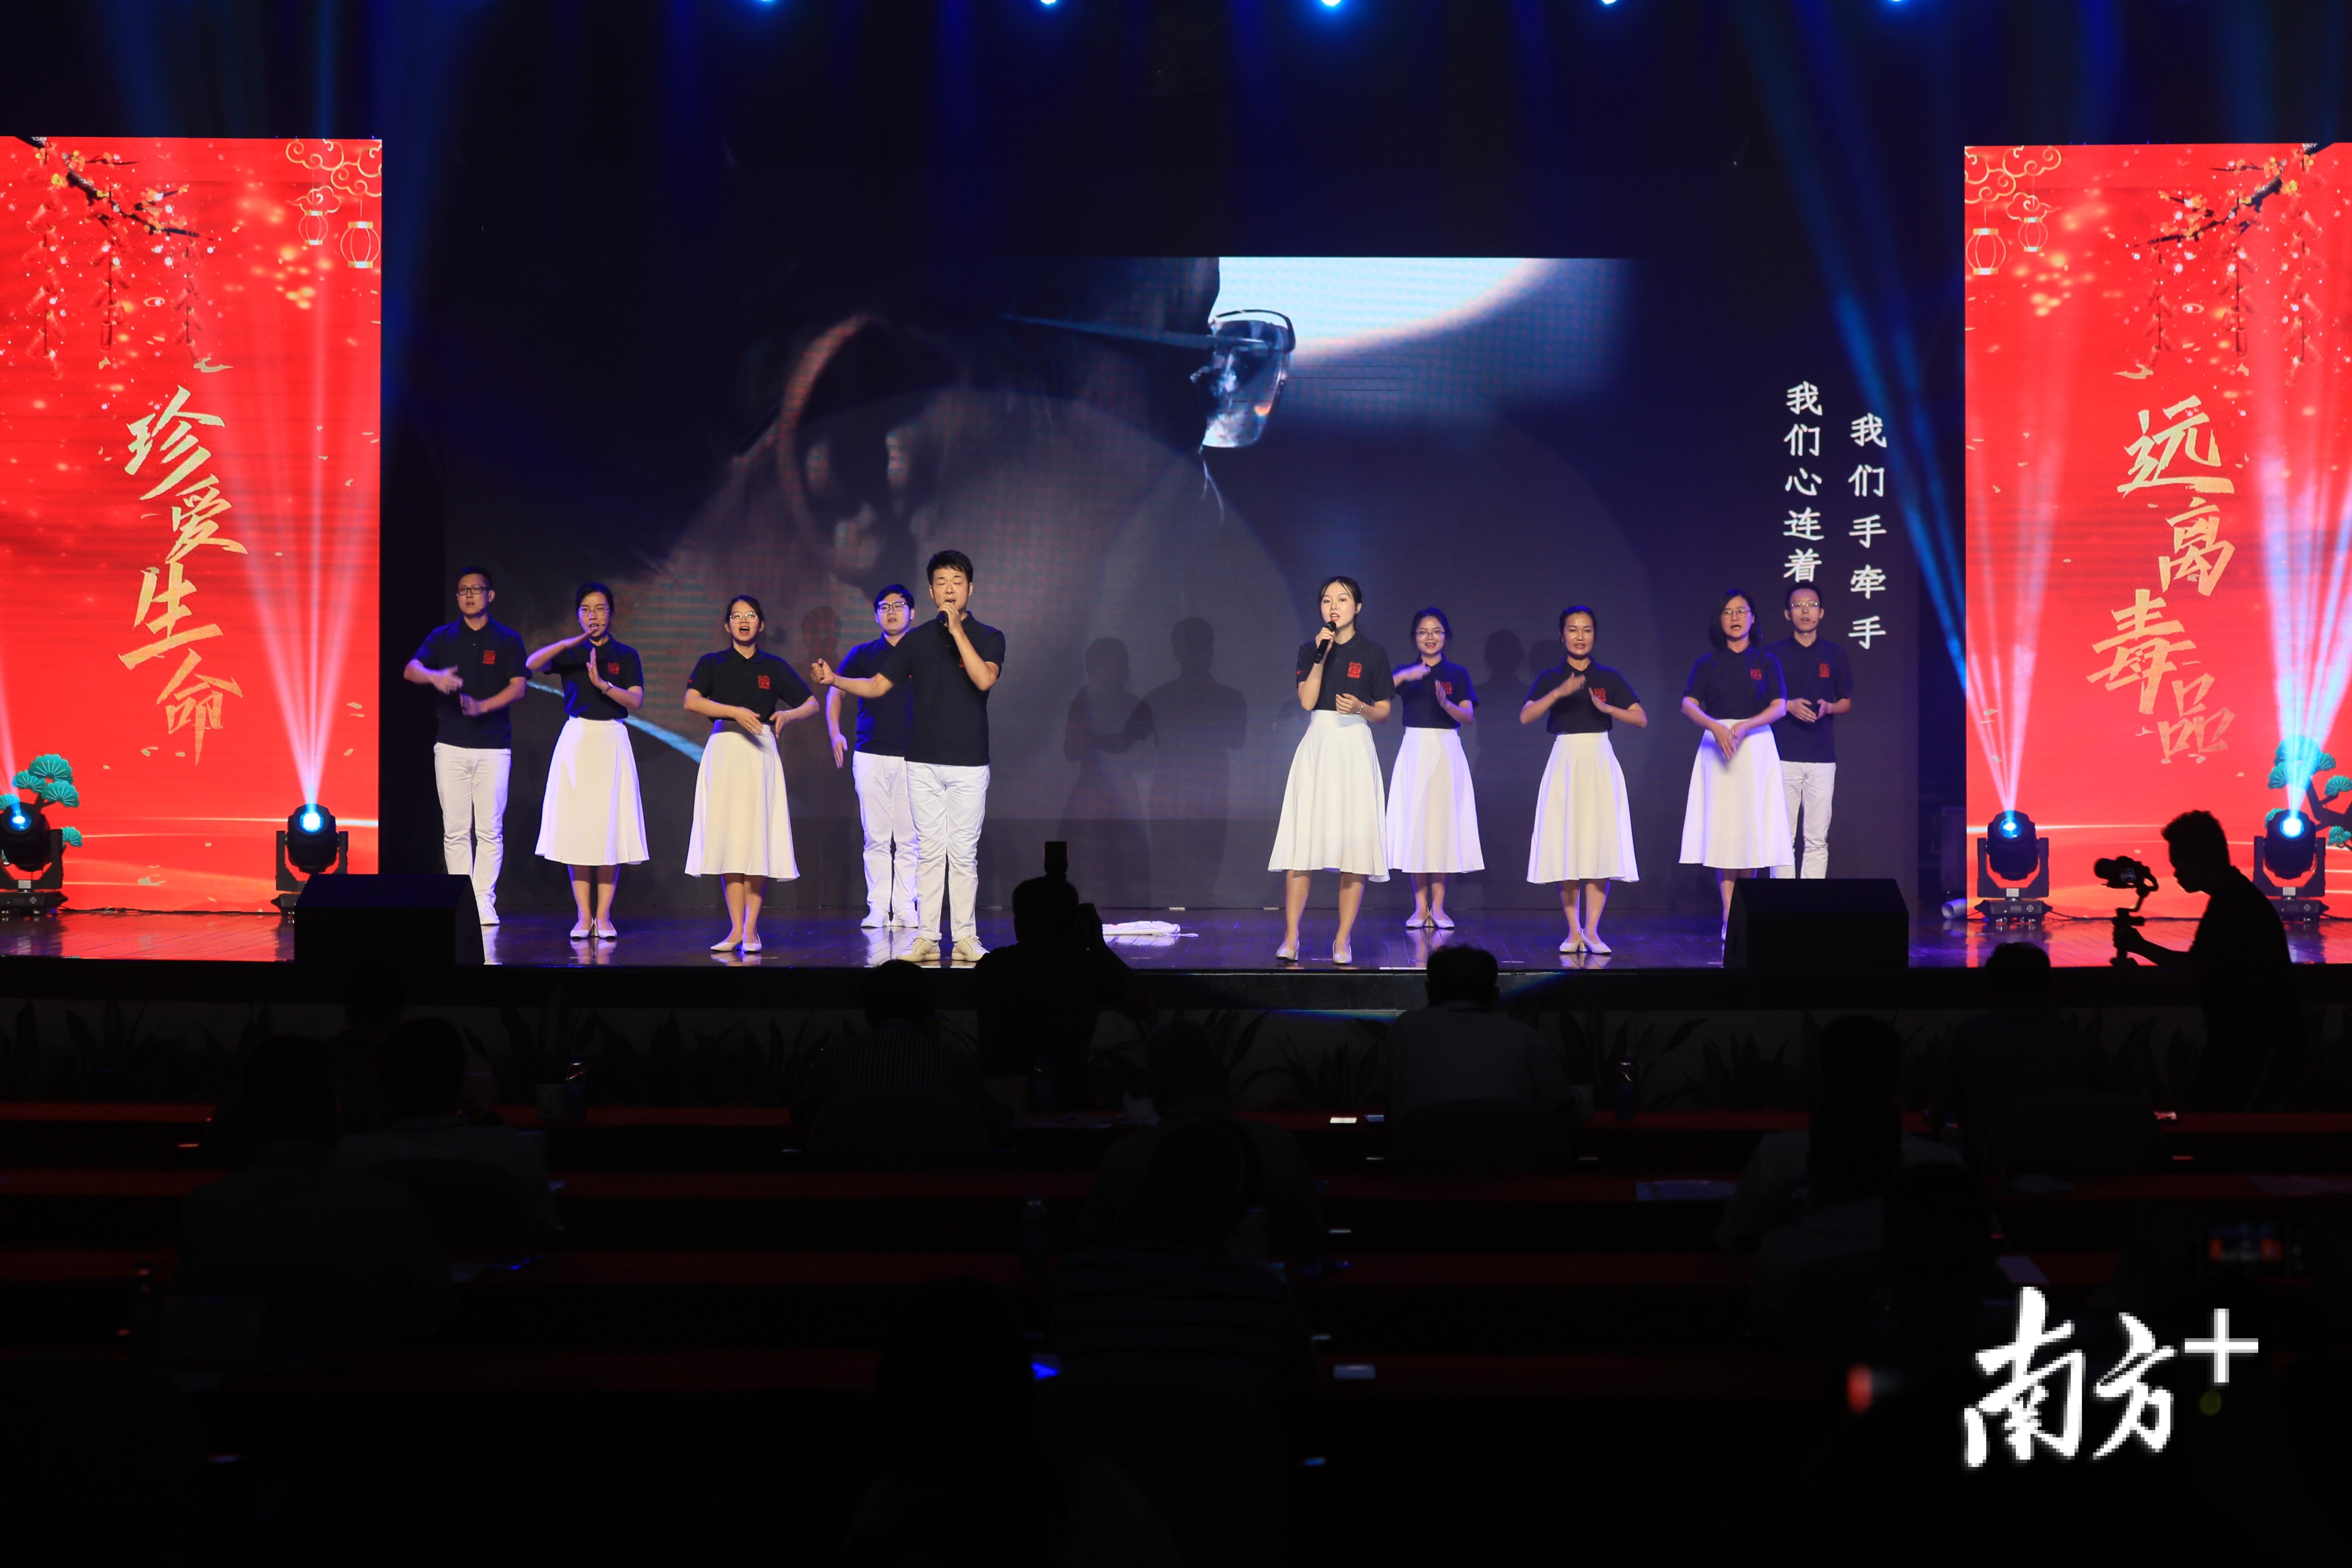 广东融聚律师事务所选送的小组唱《我们的心愿》。